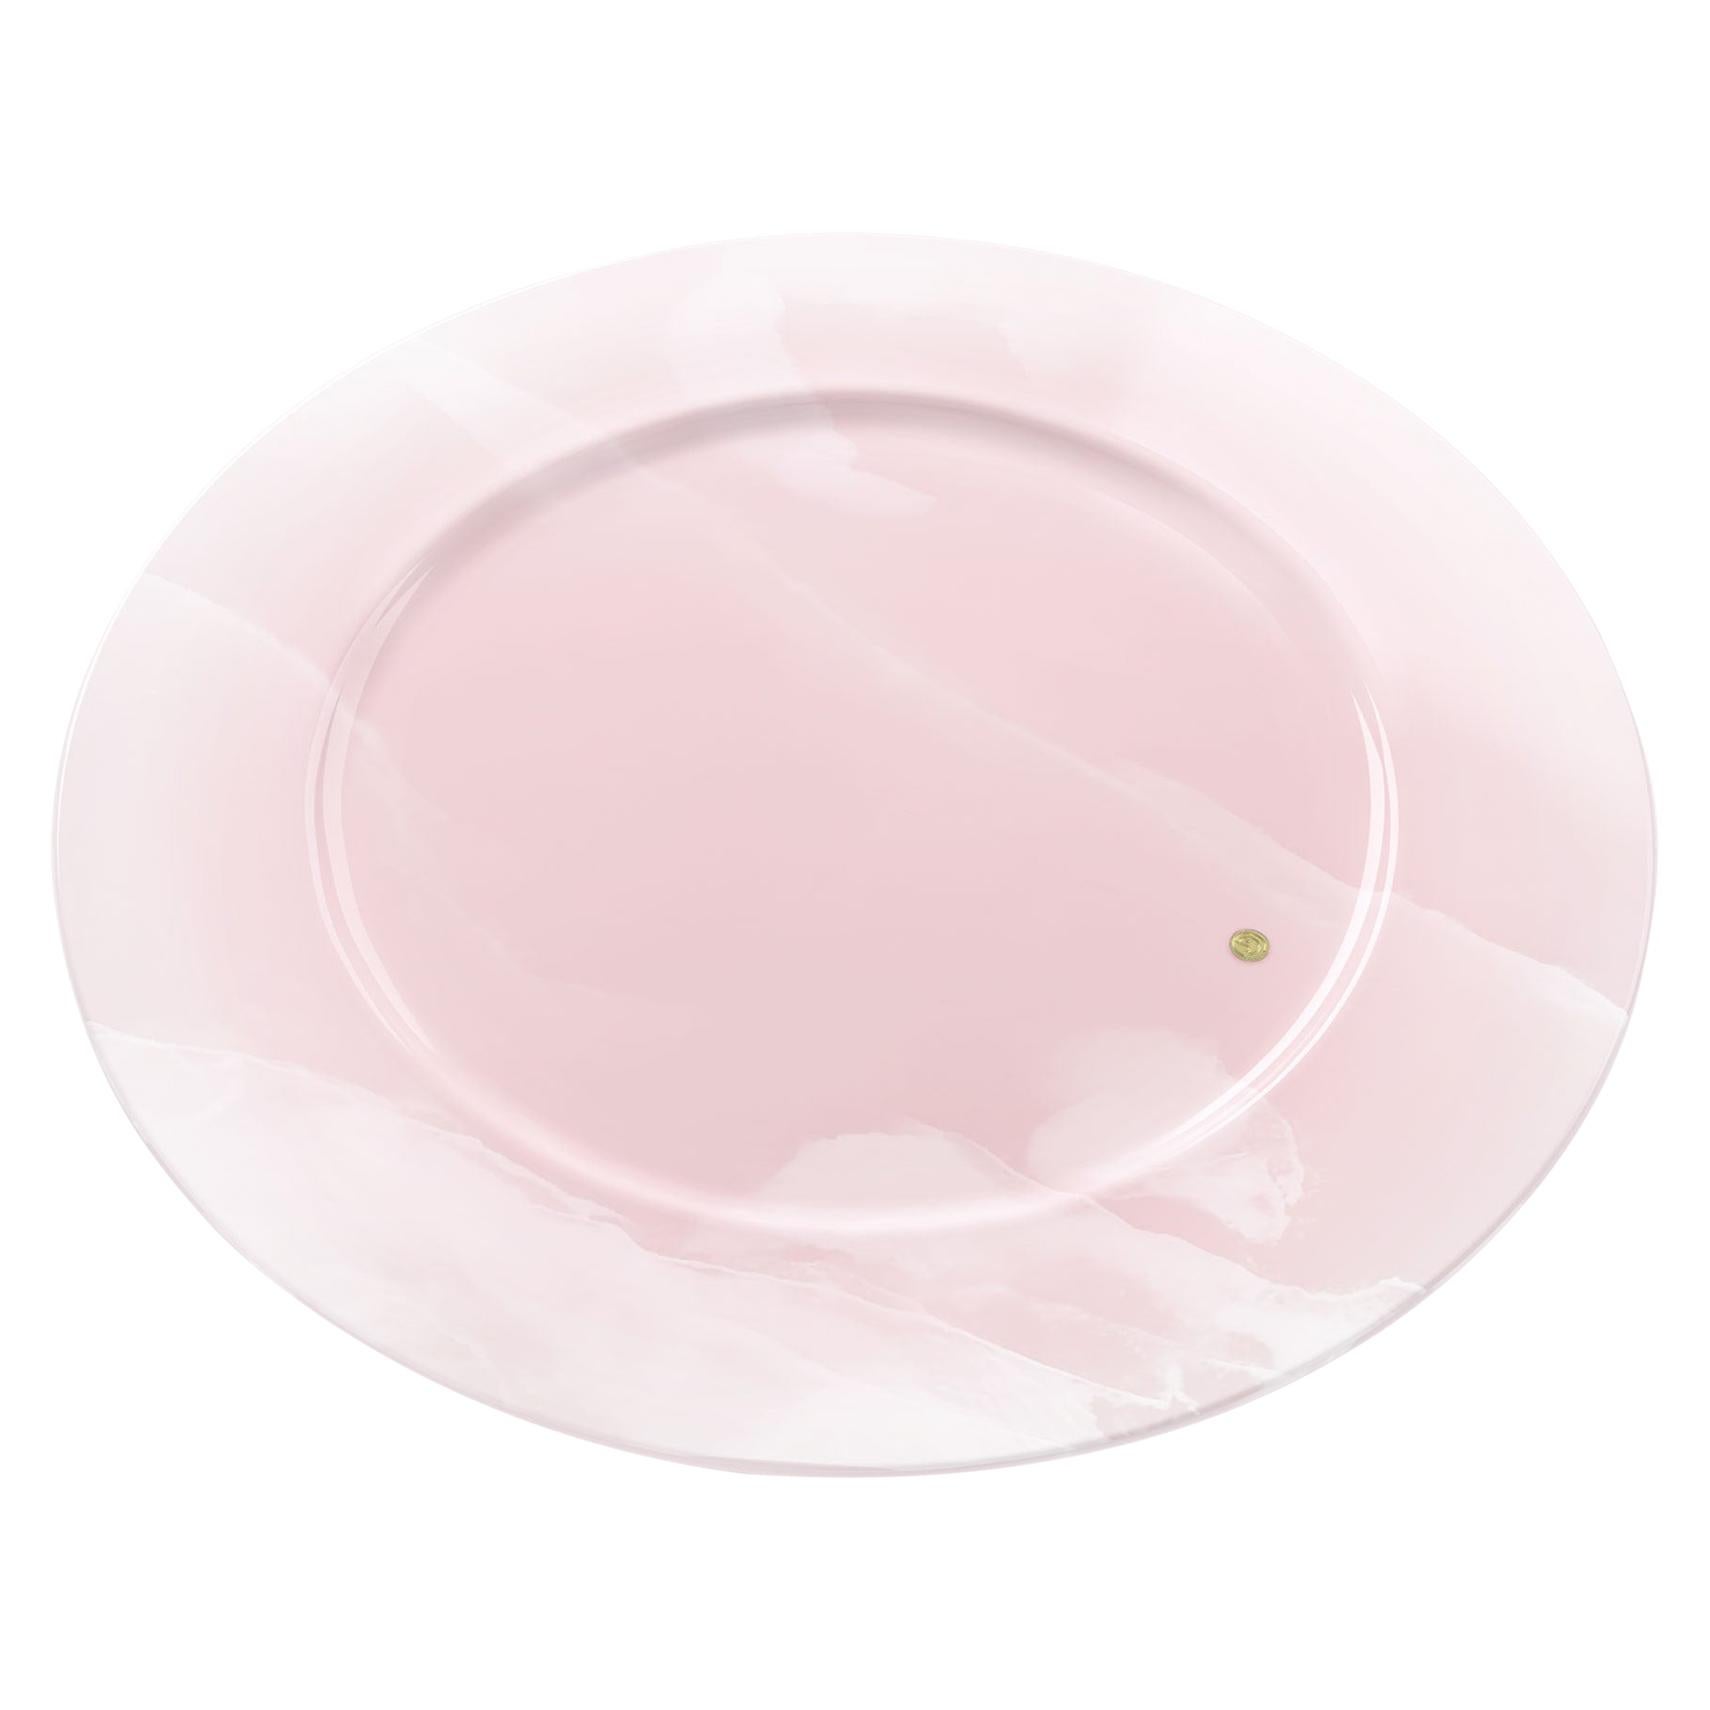 Plateaux de service en marbre onyx rose, faits à la main, design de collection